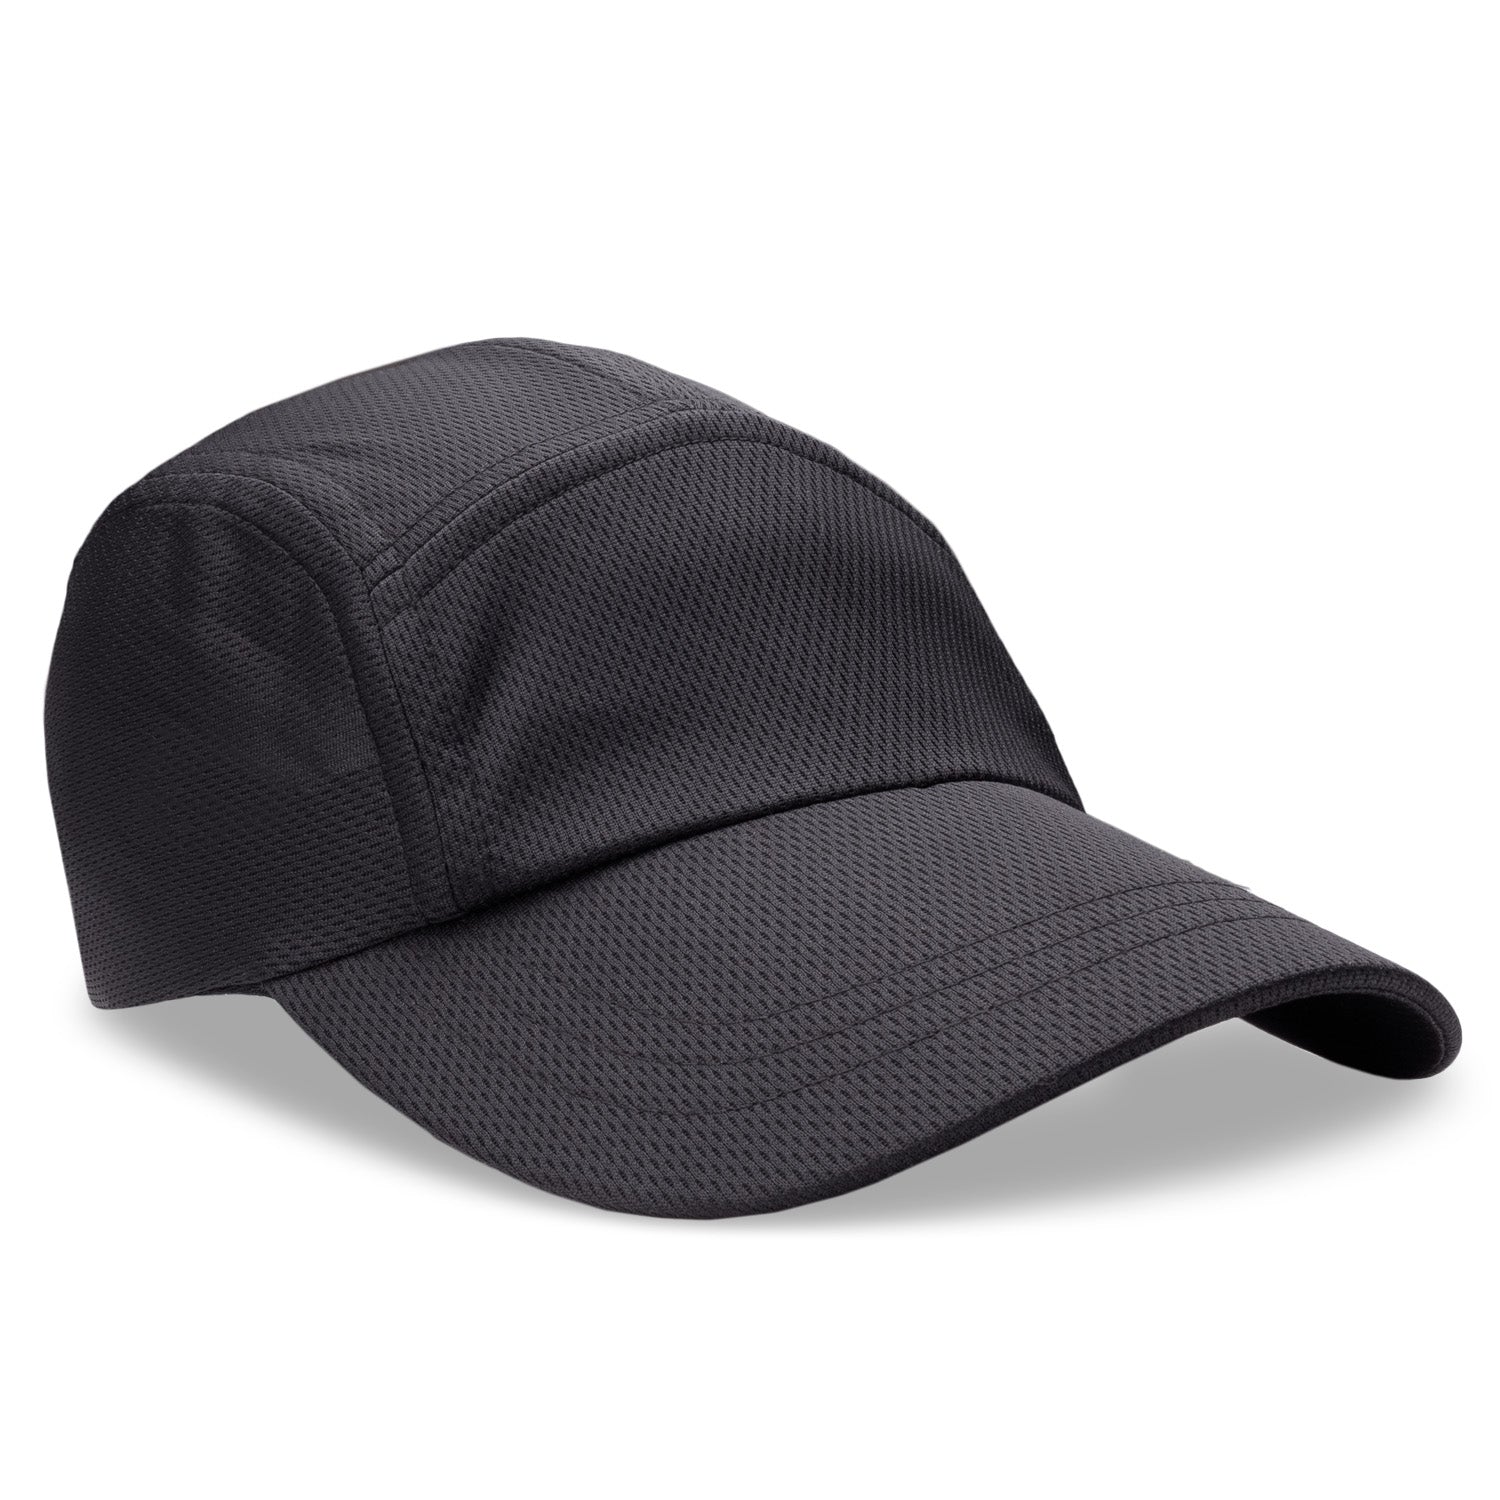 Headsweats 667169 Race Hat, Black